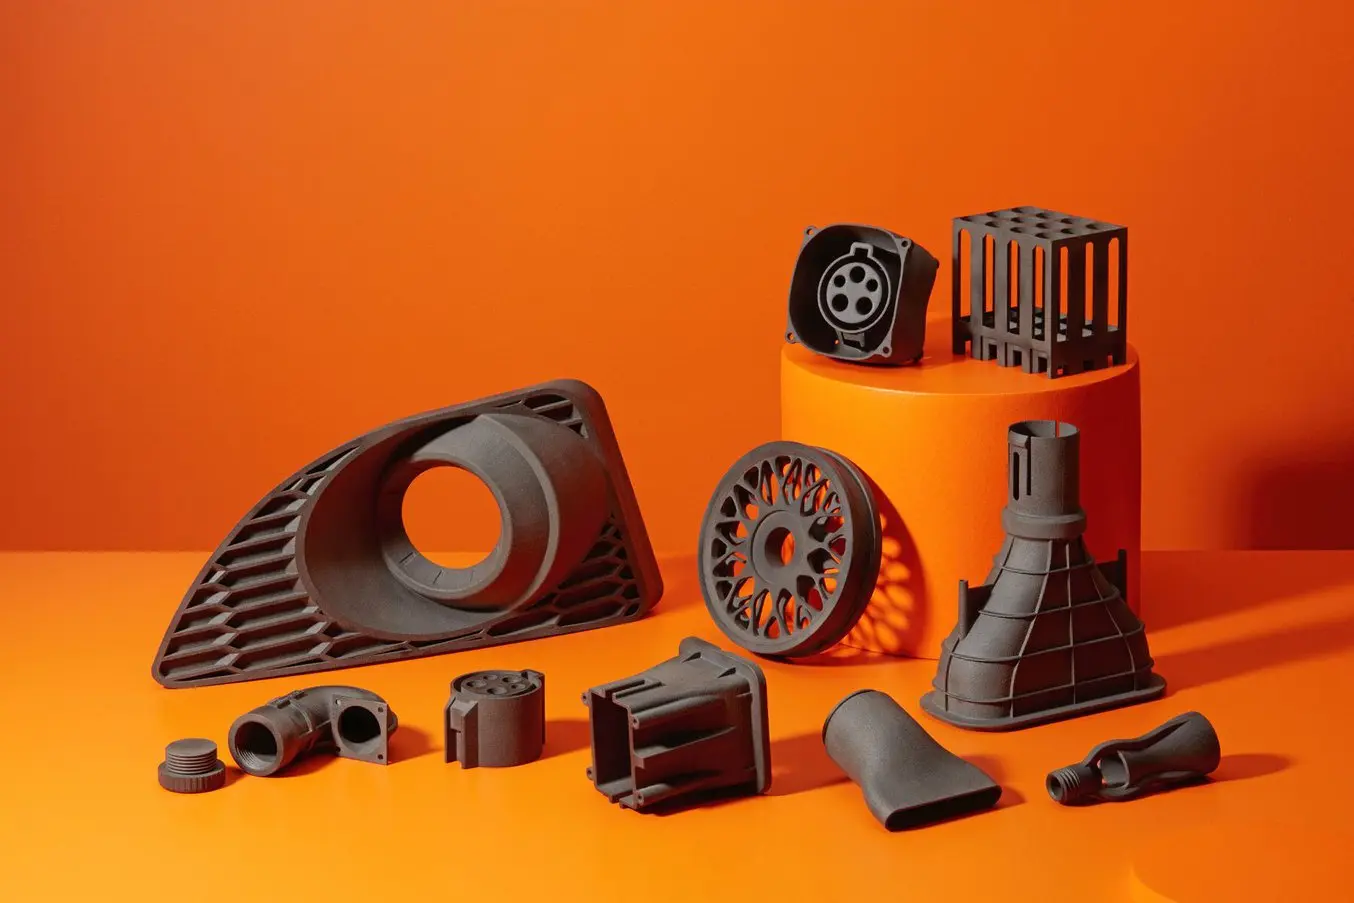 Carbon fiber 3D printed parts